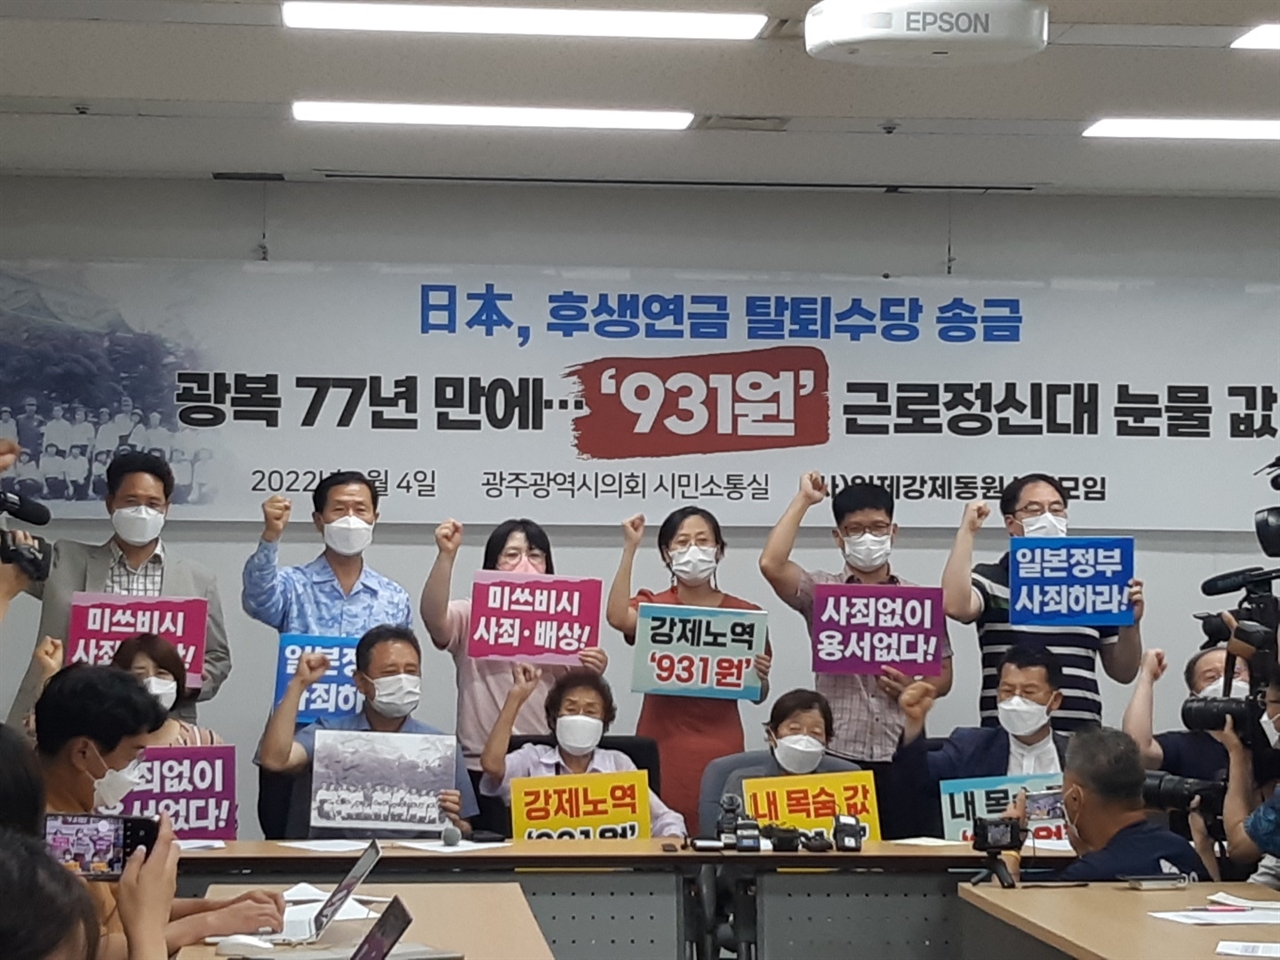 일본 후생노동성의 931원 송금에 대한 규탄 기자회견